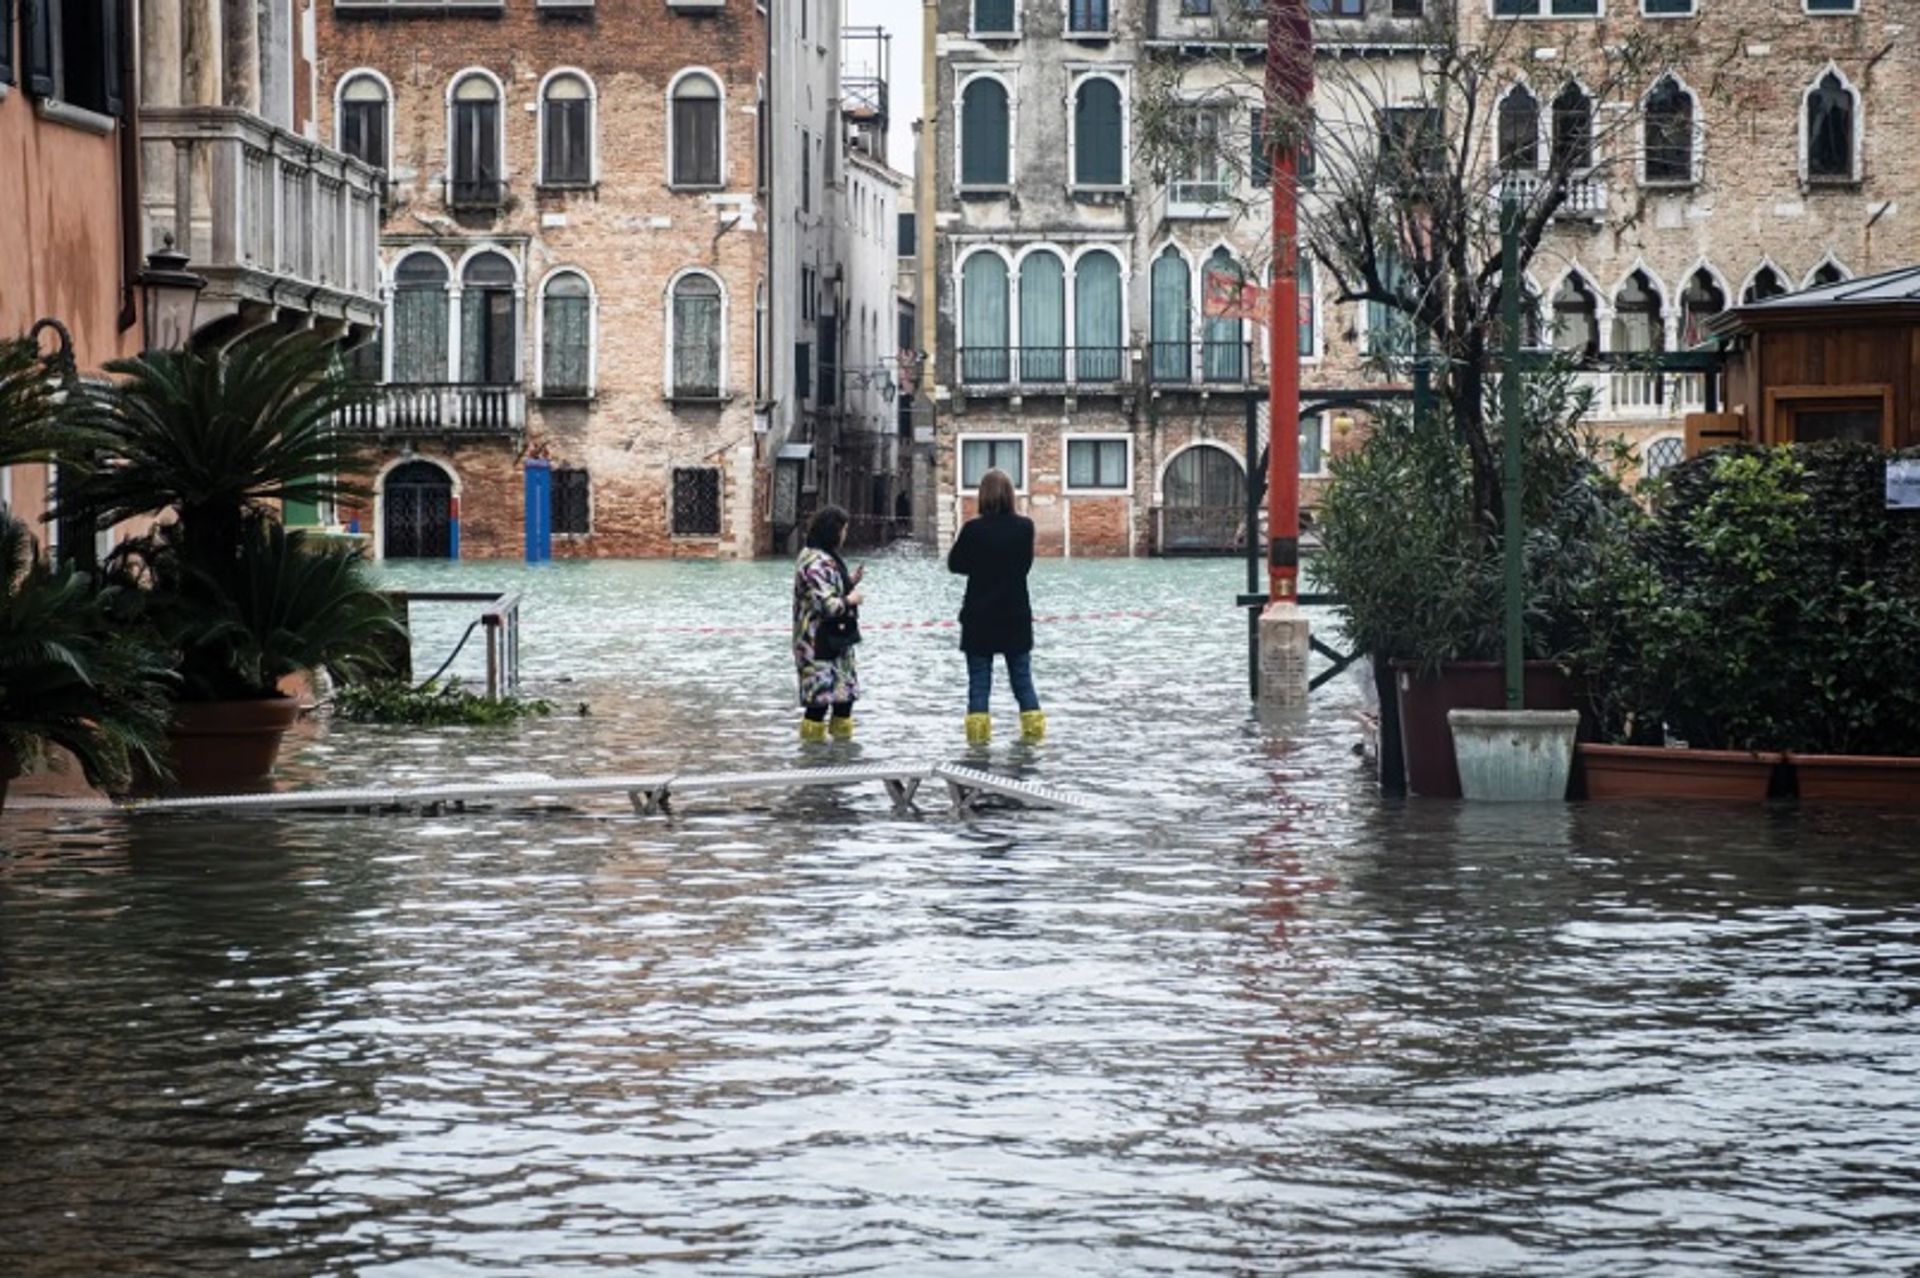 גל סערה שטף את העיר ב-17 בנובמבר 2019 והמים הגיעו ל-187 ס"מ מעל גובה פני הים הממוצע

רוברטו סילבינו/NurPhoto דרך Getty Images